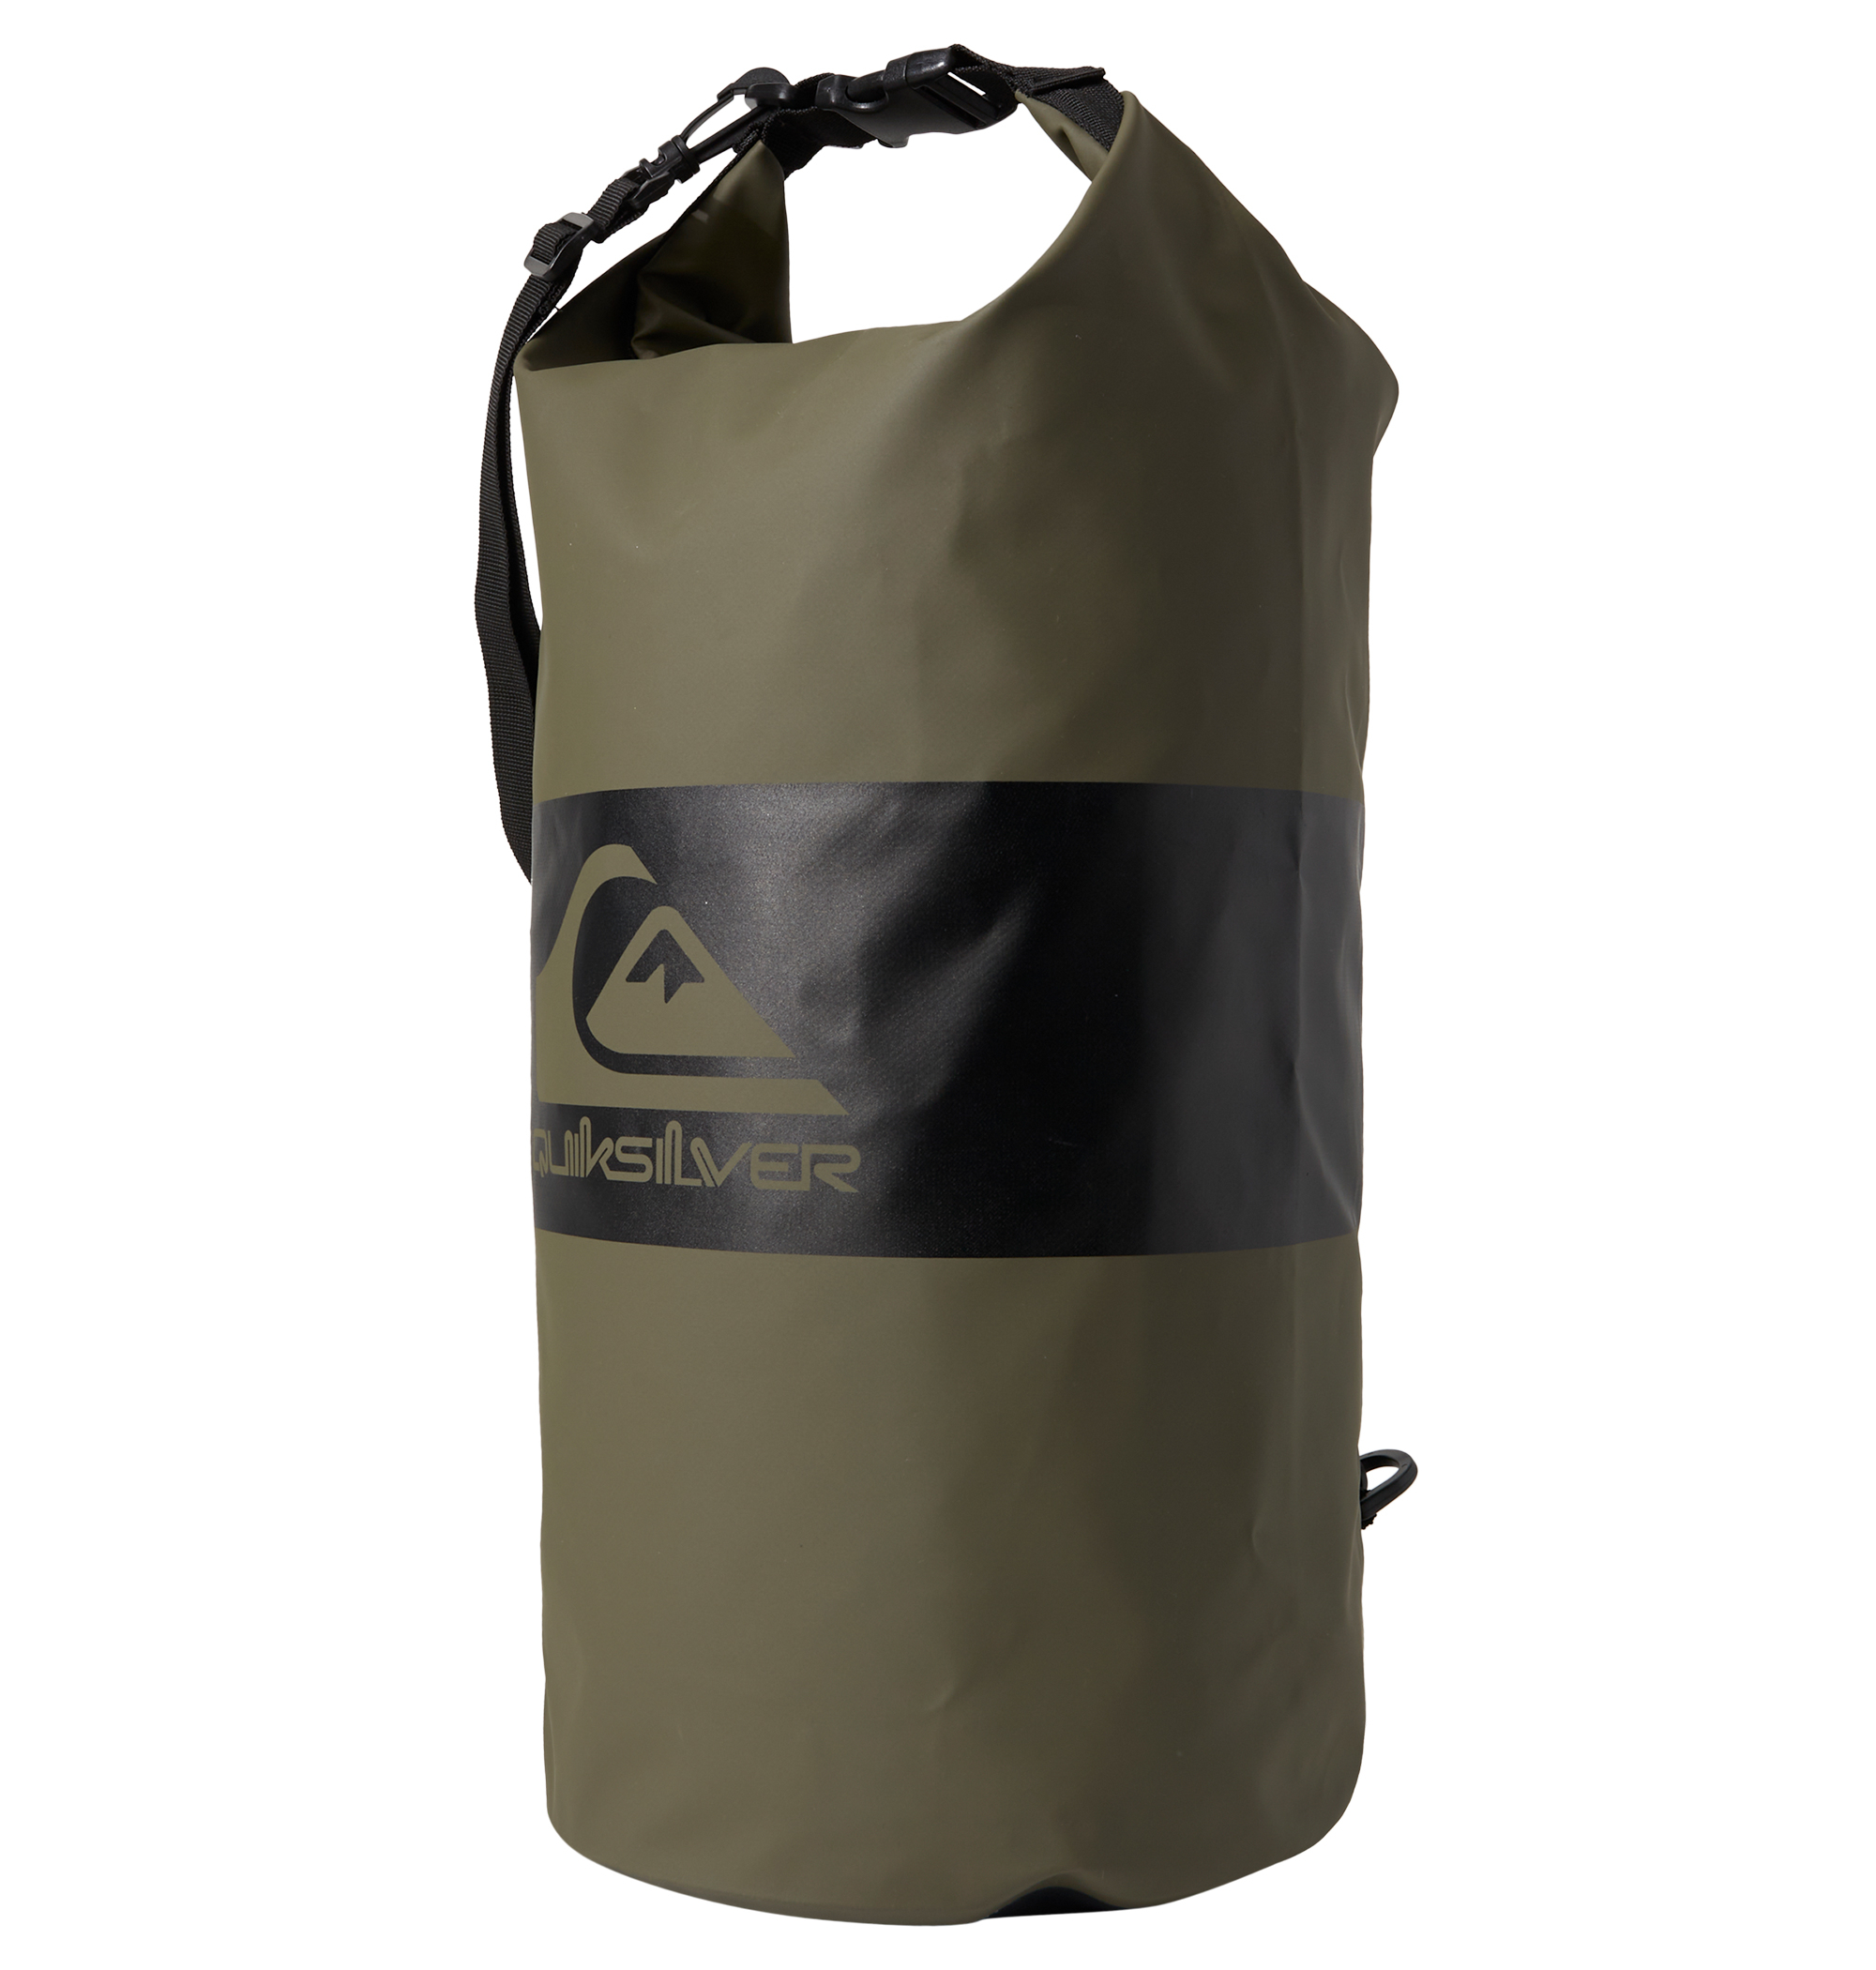  MEDIUM WATER STASH 防水、耐久性に優れるターポリンと600Dのポリエステル生地を使用したサーフスタッシュバッグ